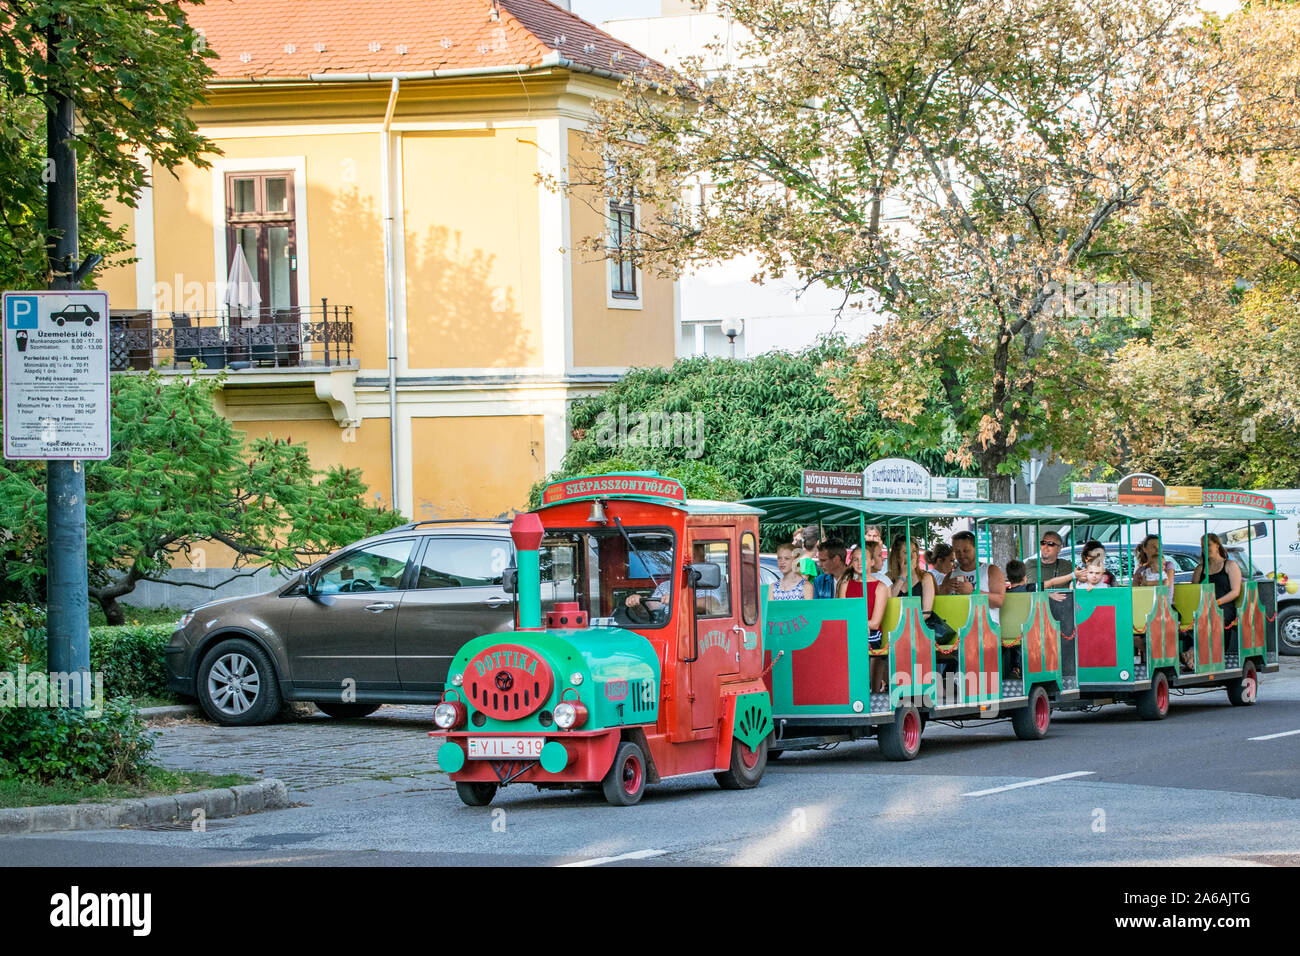 Kisvonat Eger, les touristes sur un train d'excursion touristique à Eger, Hongrie Banque D'Images